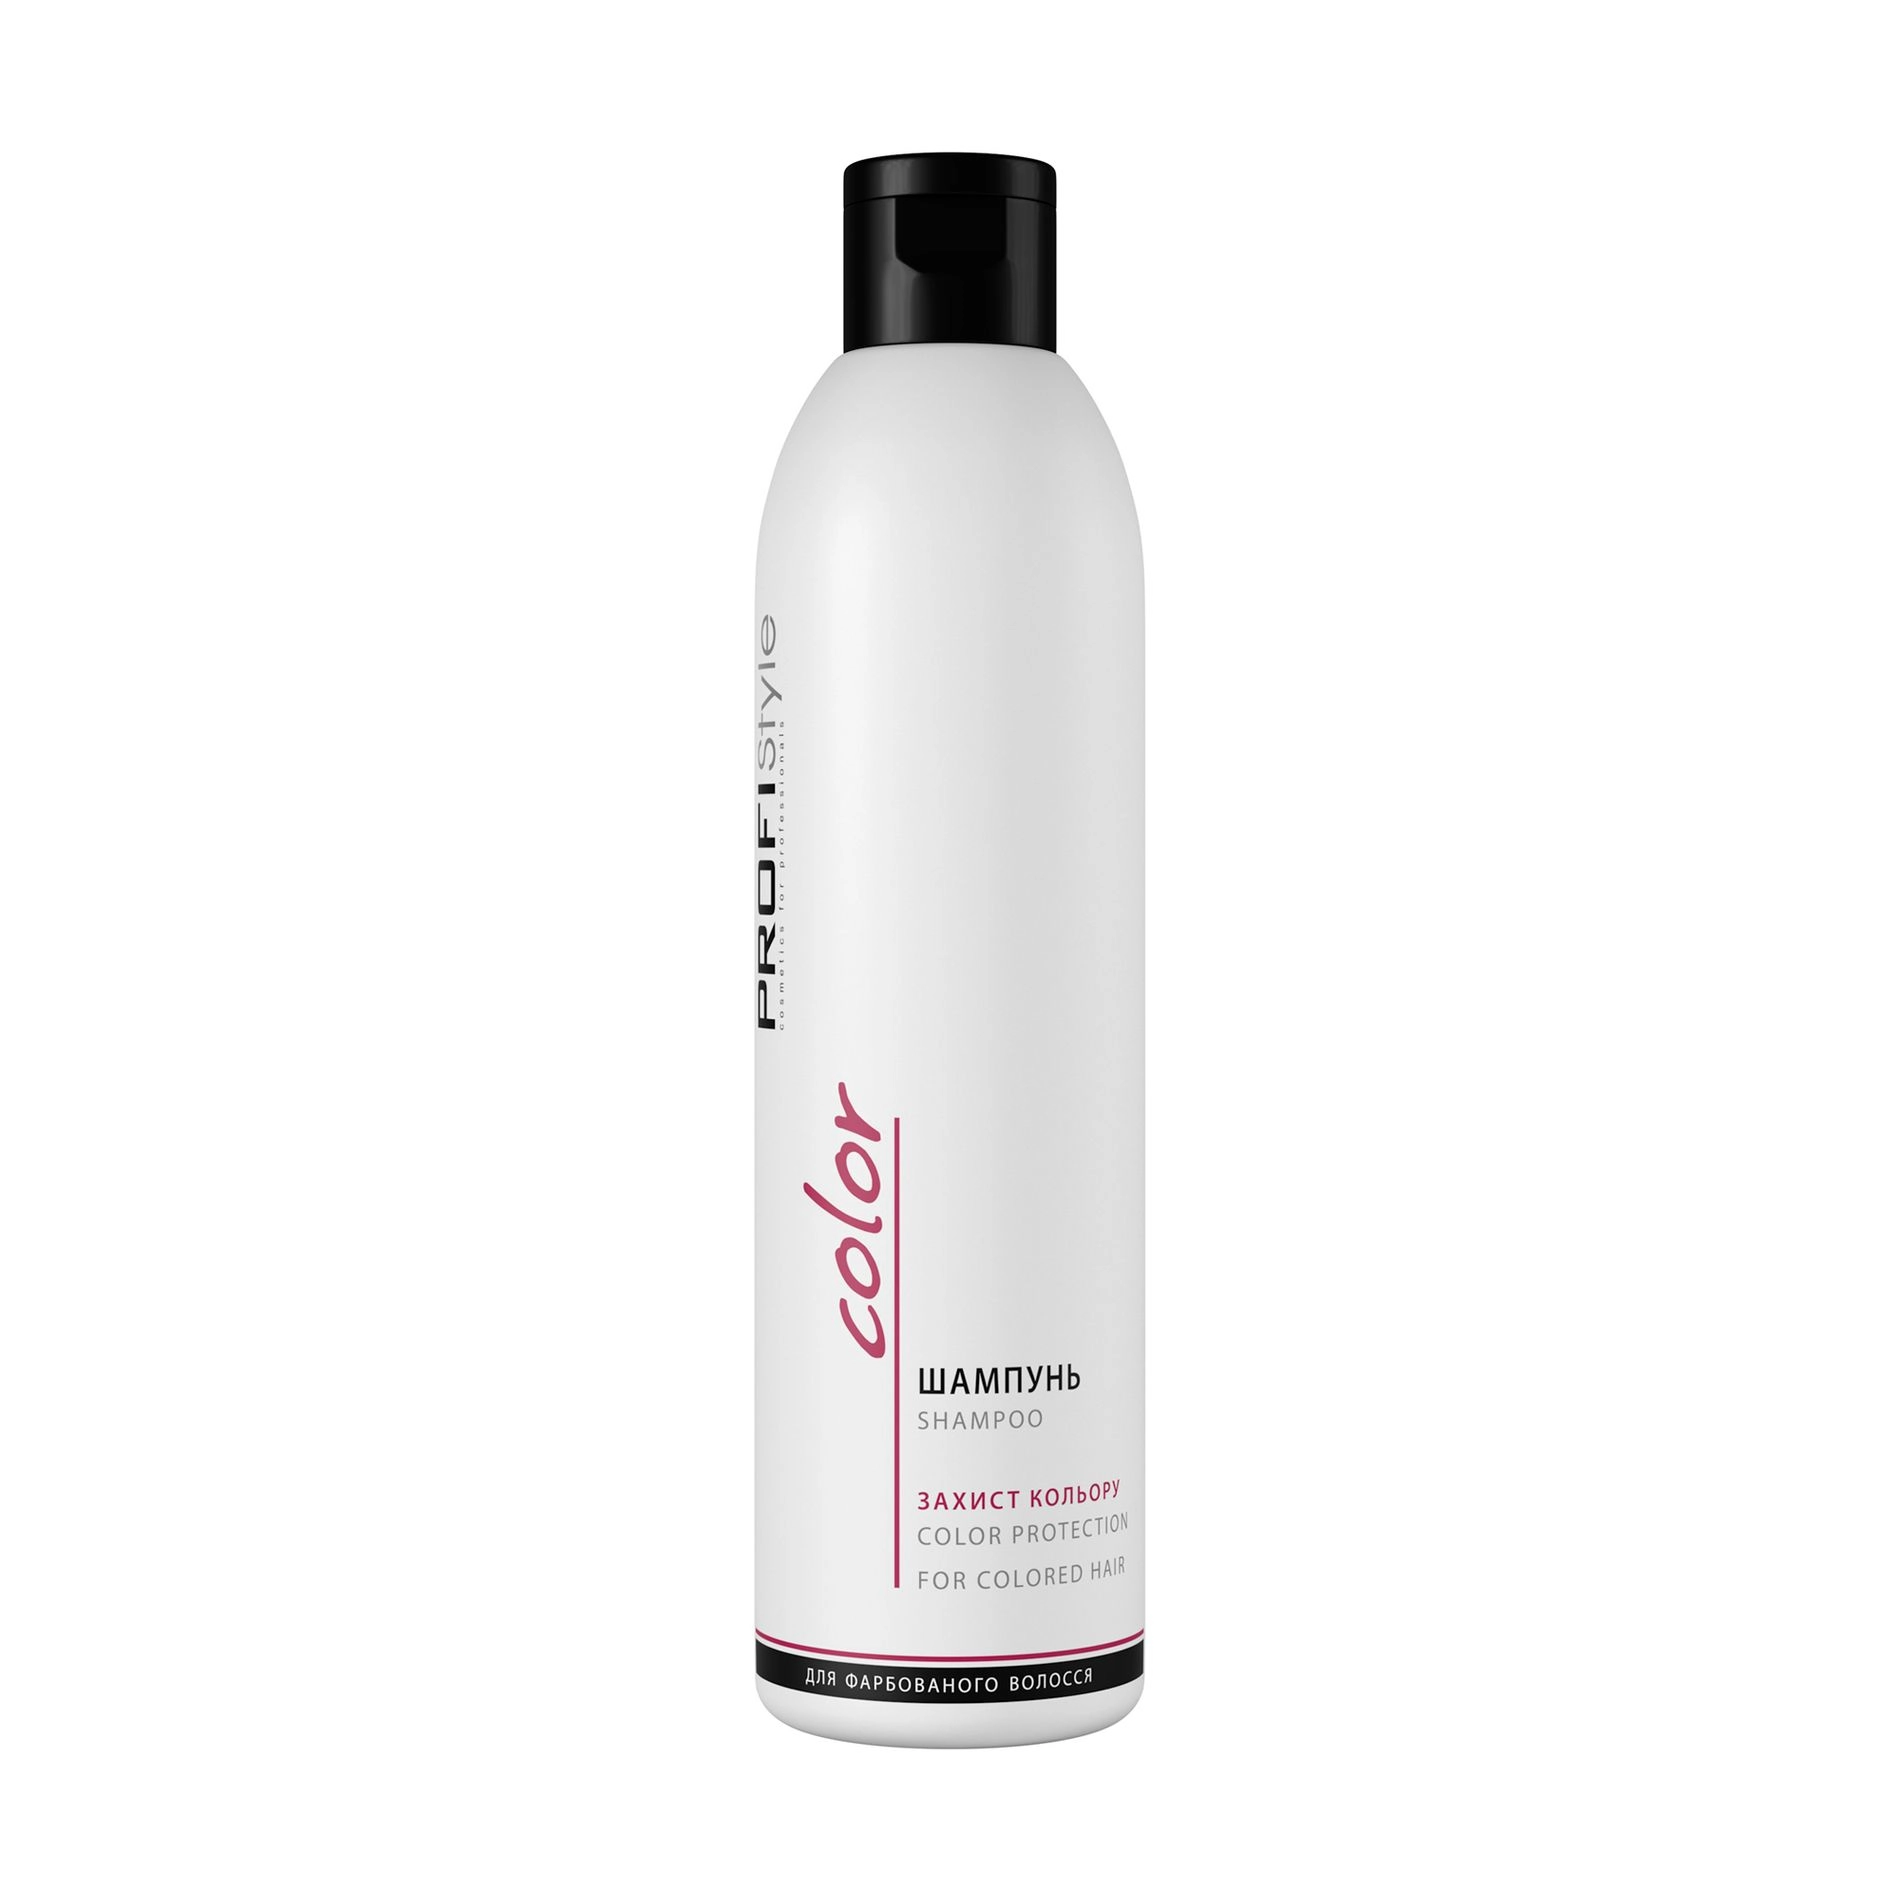 Profi Style Шампунь Color Protection Shampoo захист кольору, для фарбованого волосся - фото N1